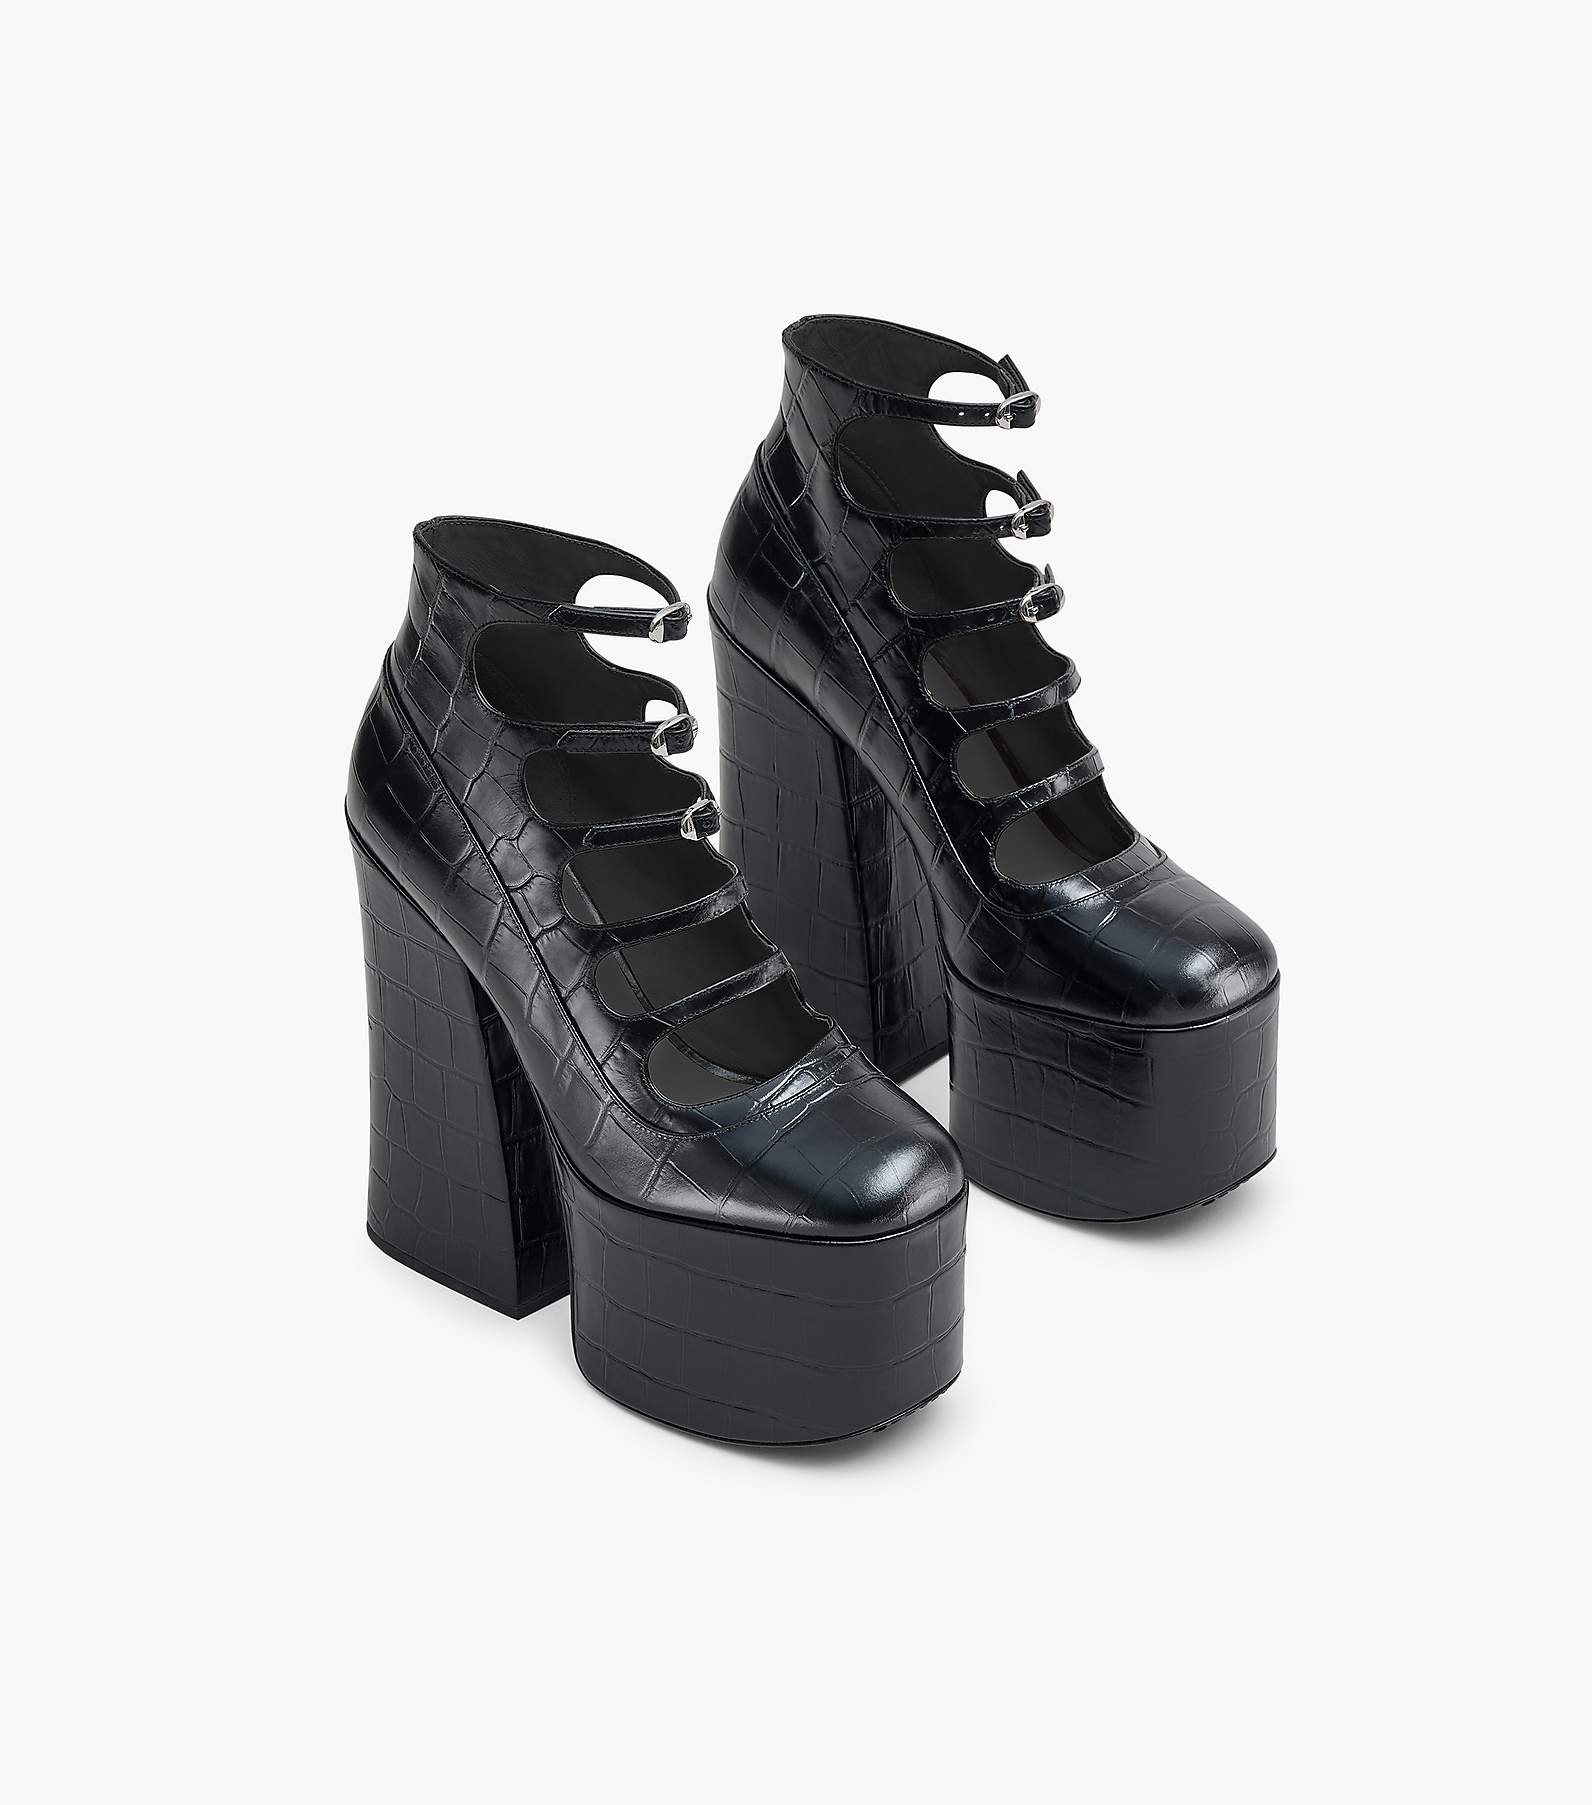 Marc Jacobs Women's Footwear - Black - US 7